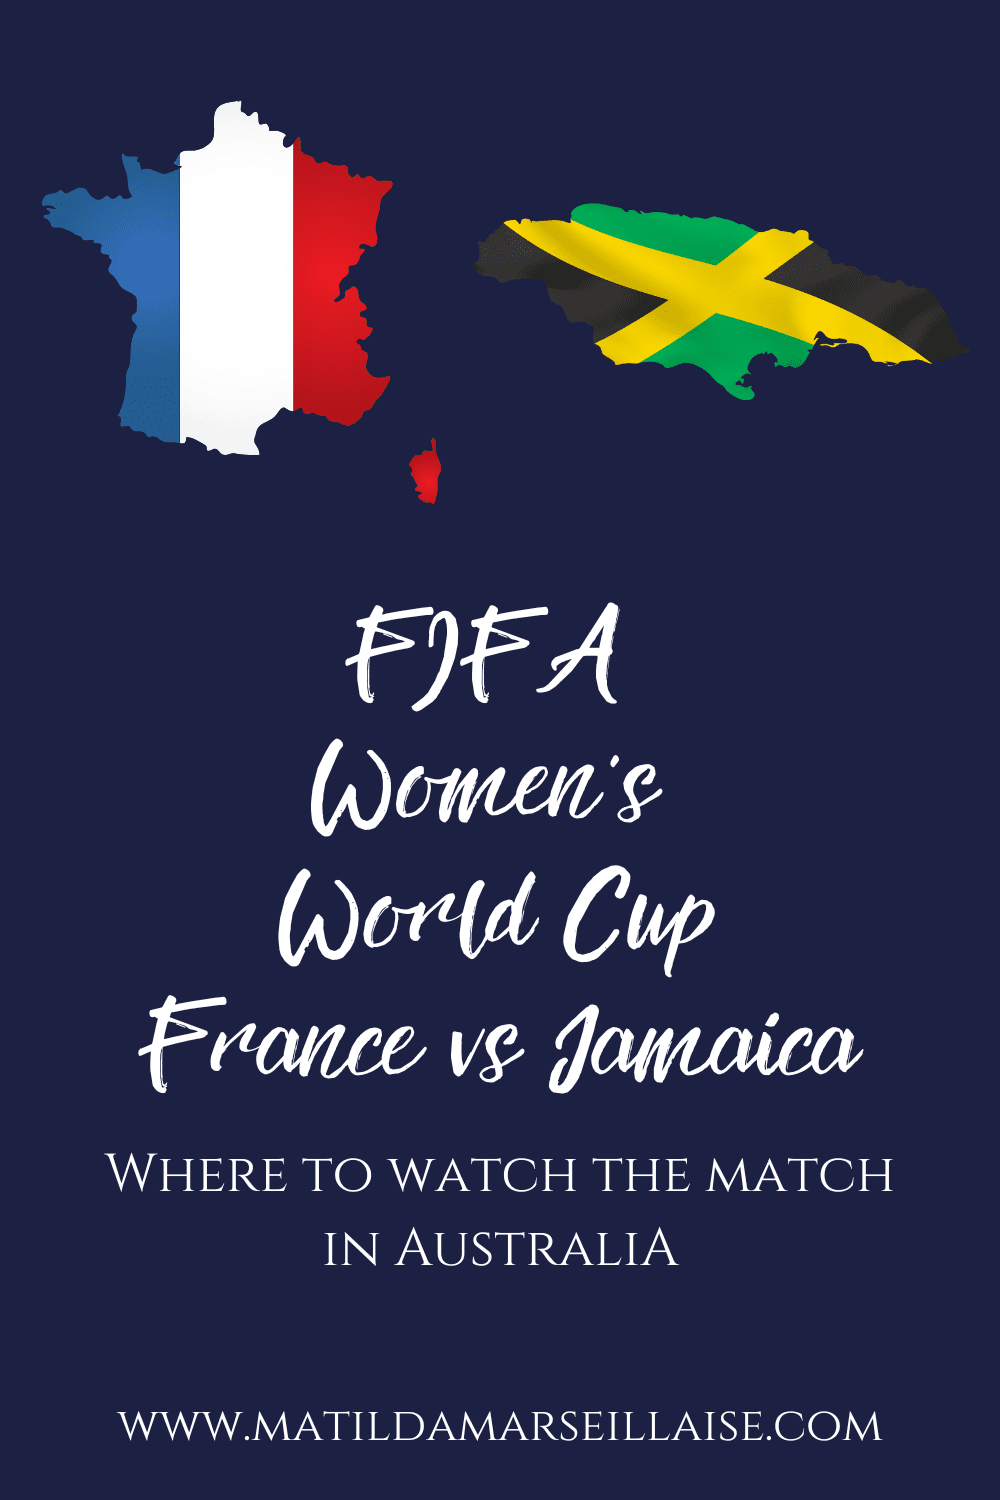 France vs Jamaica in Australia